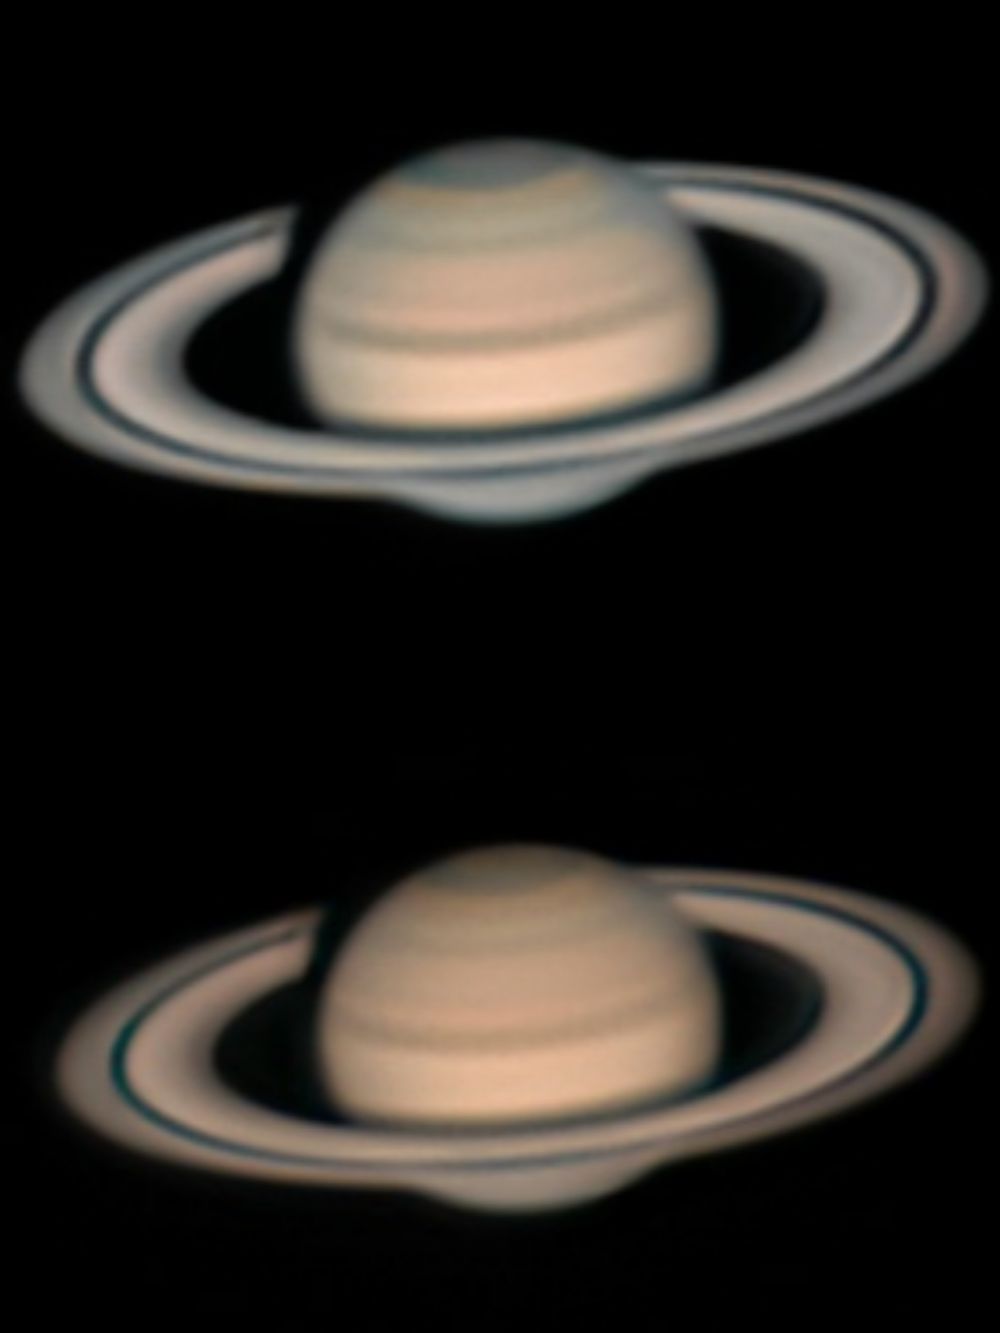 Сатурн 24 сентября, новая версия